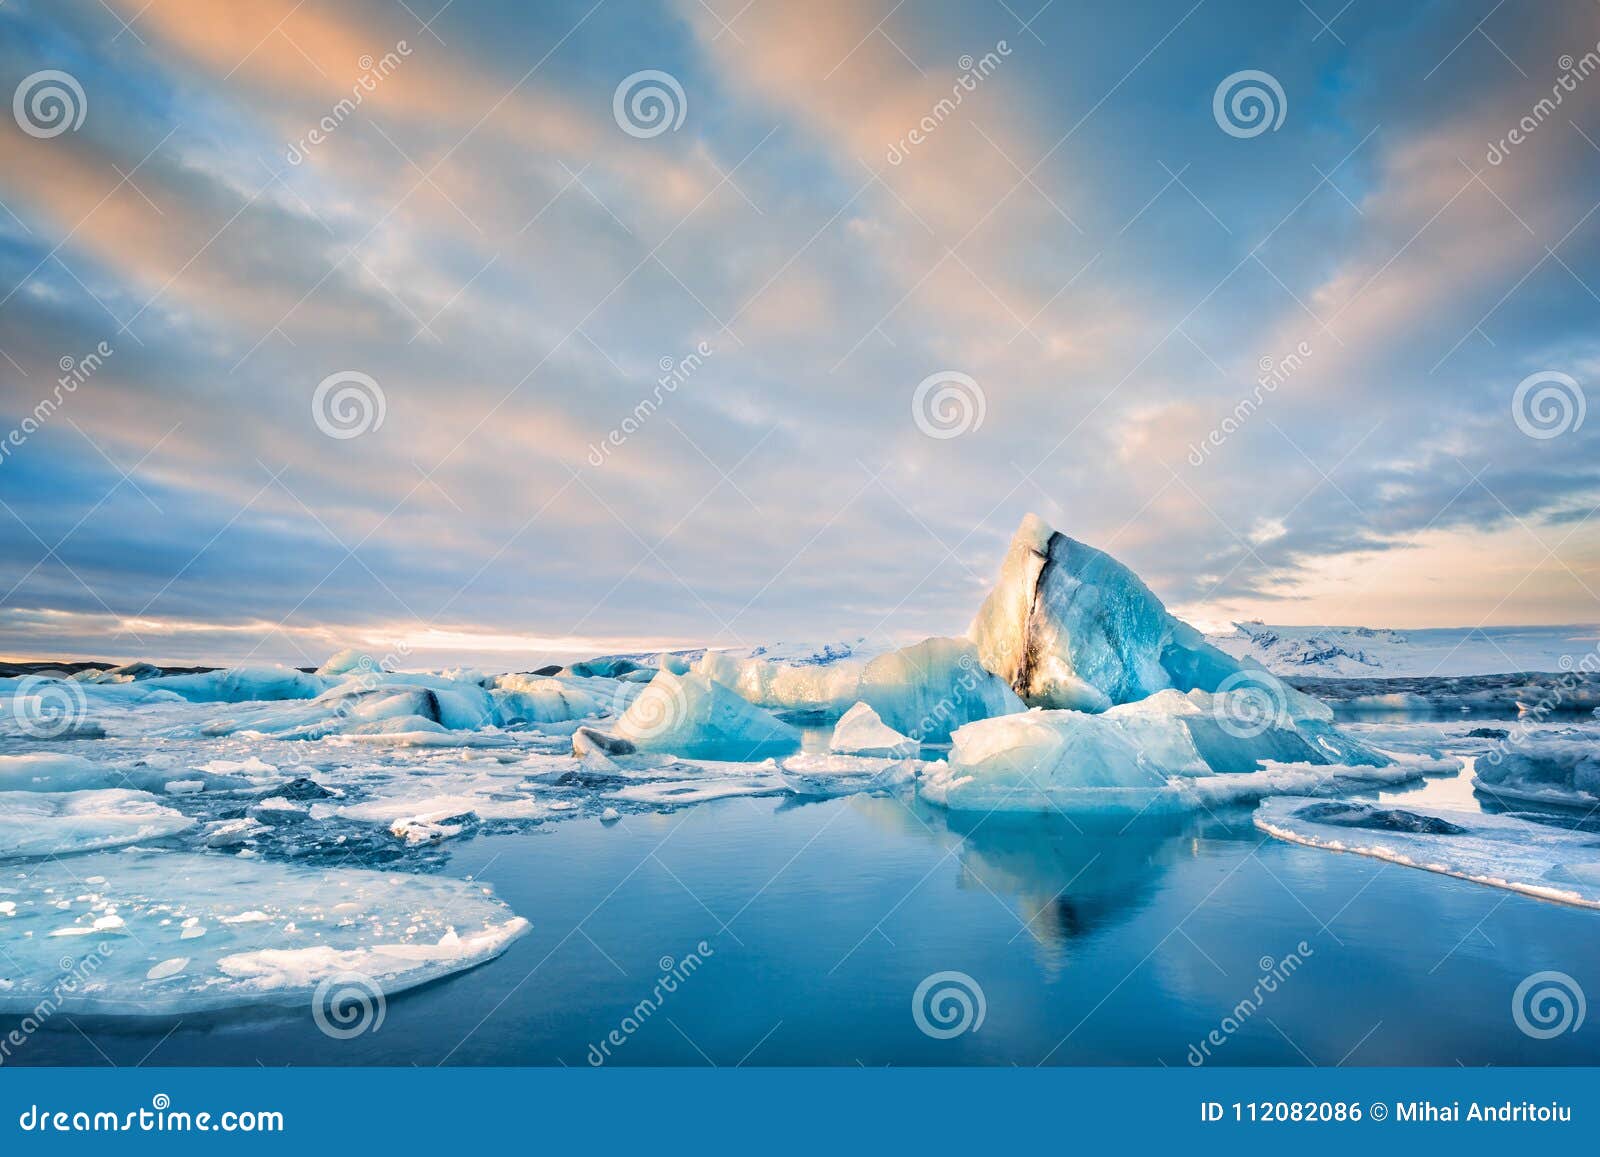 icebergs float on jokulsarlon glacier lagoon, in iceland.